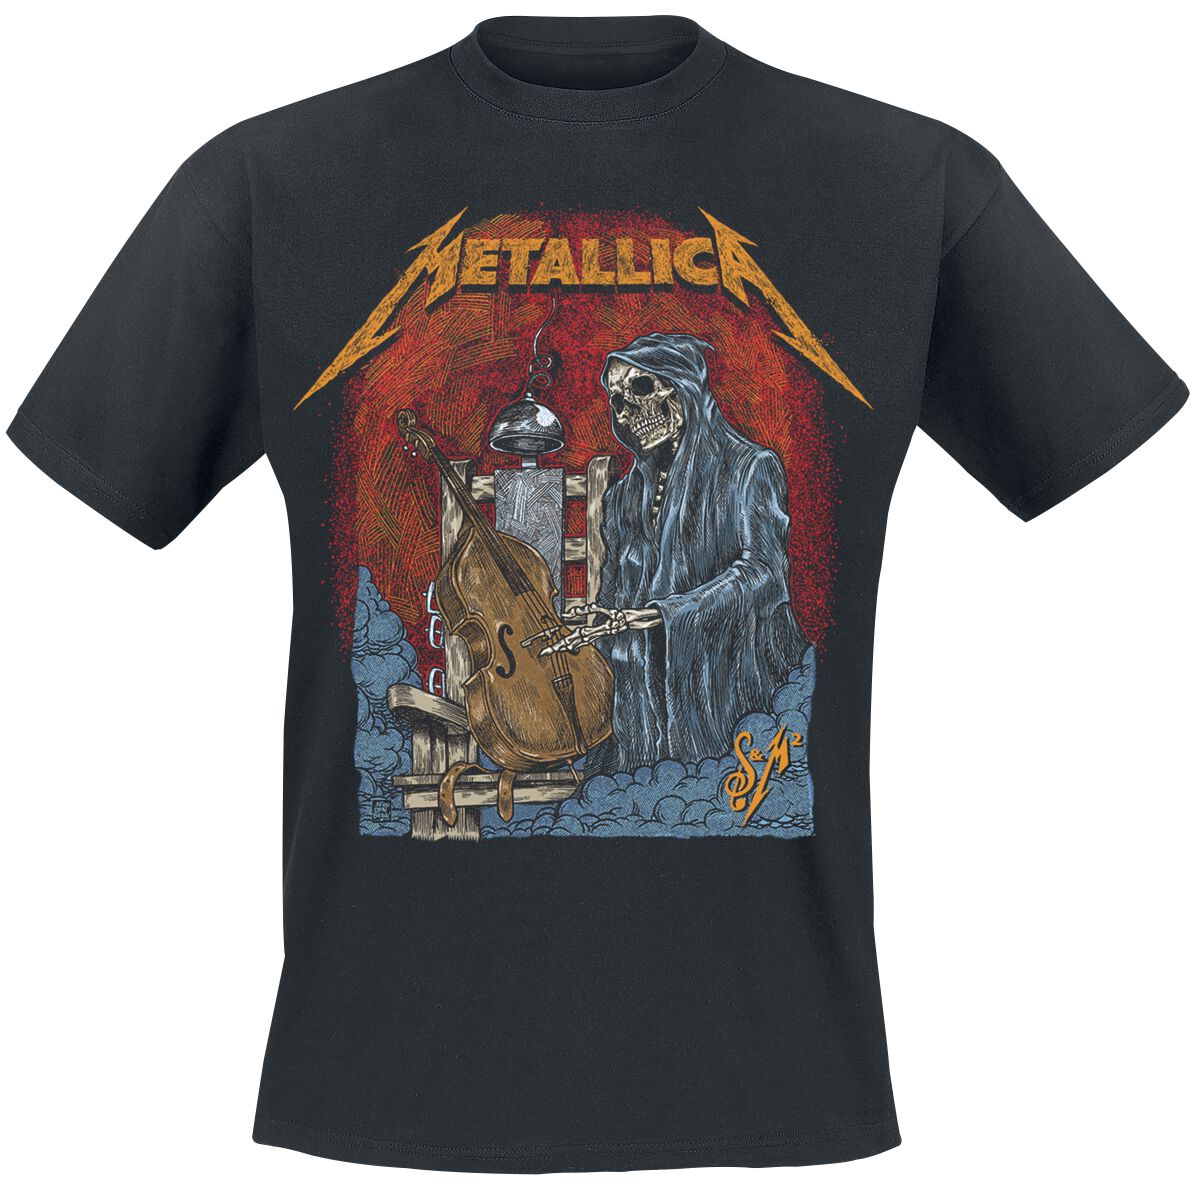 Metallica T-Shirt - S&M2 Cello Reaper - S bis 5XL - für Männer - Größe 4XL - schwarz  - Lizenziertes Merchandise!